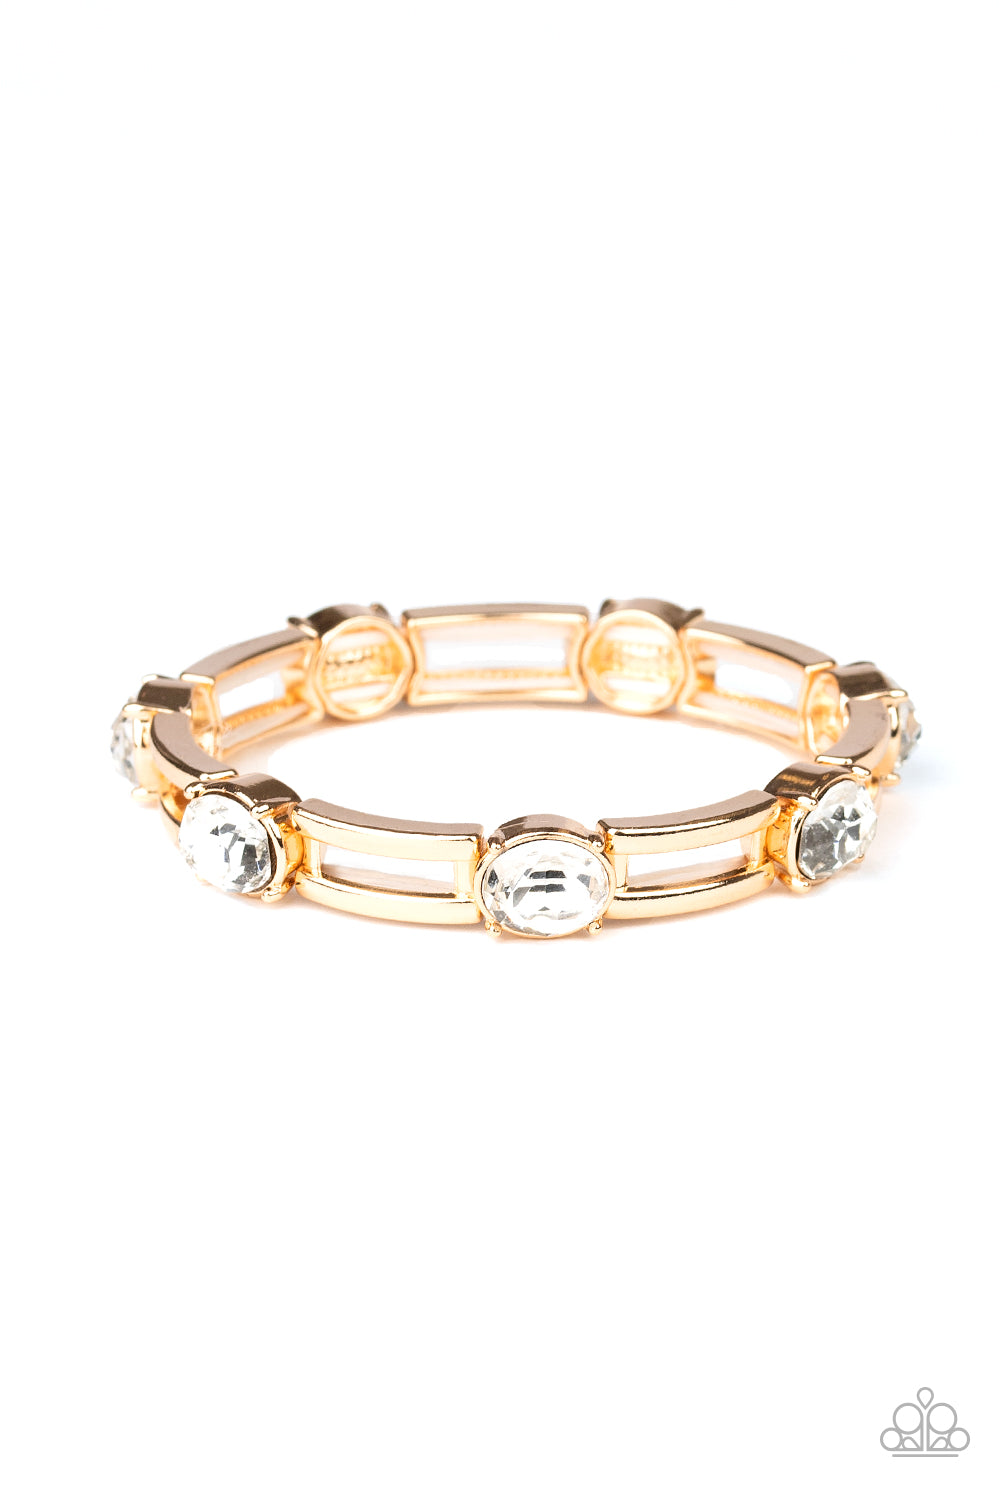 FLASH or Credit? - Gold Bracelet - Princess Glam Shop